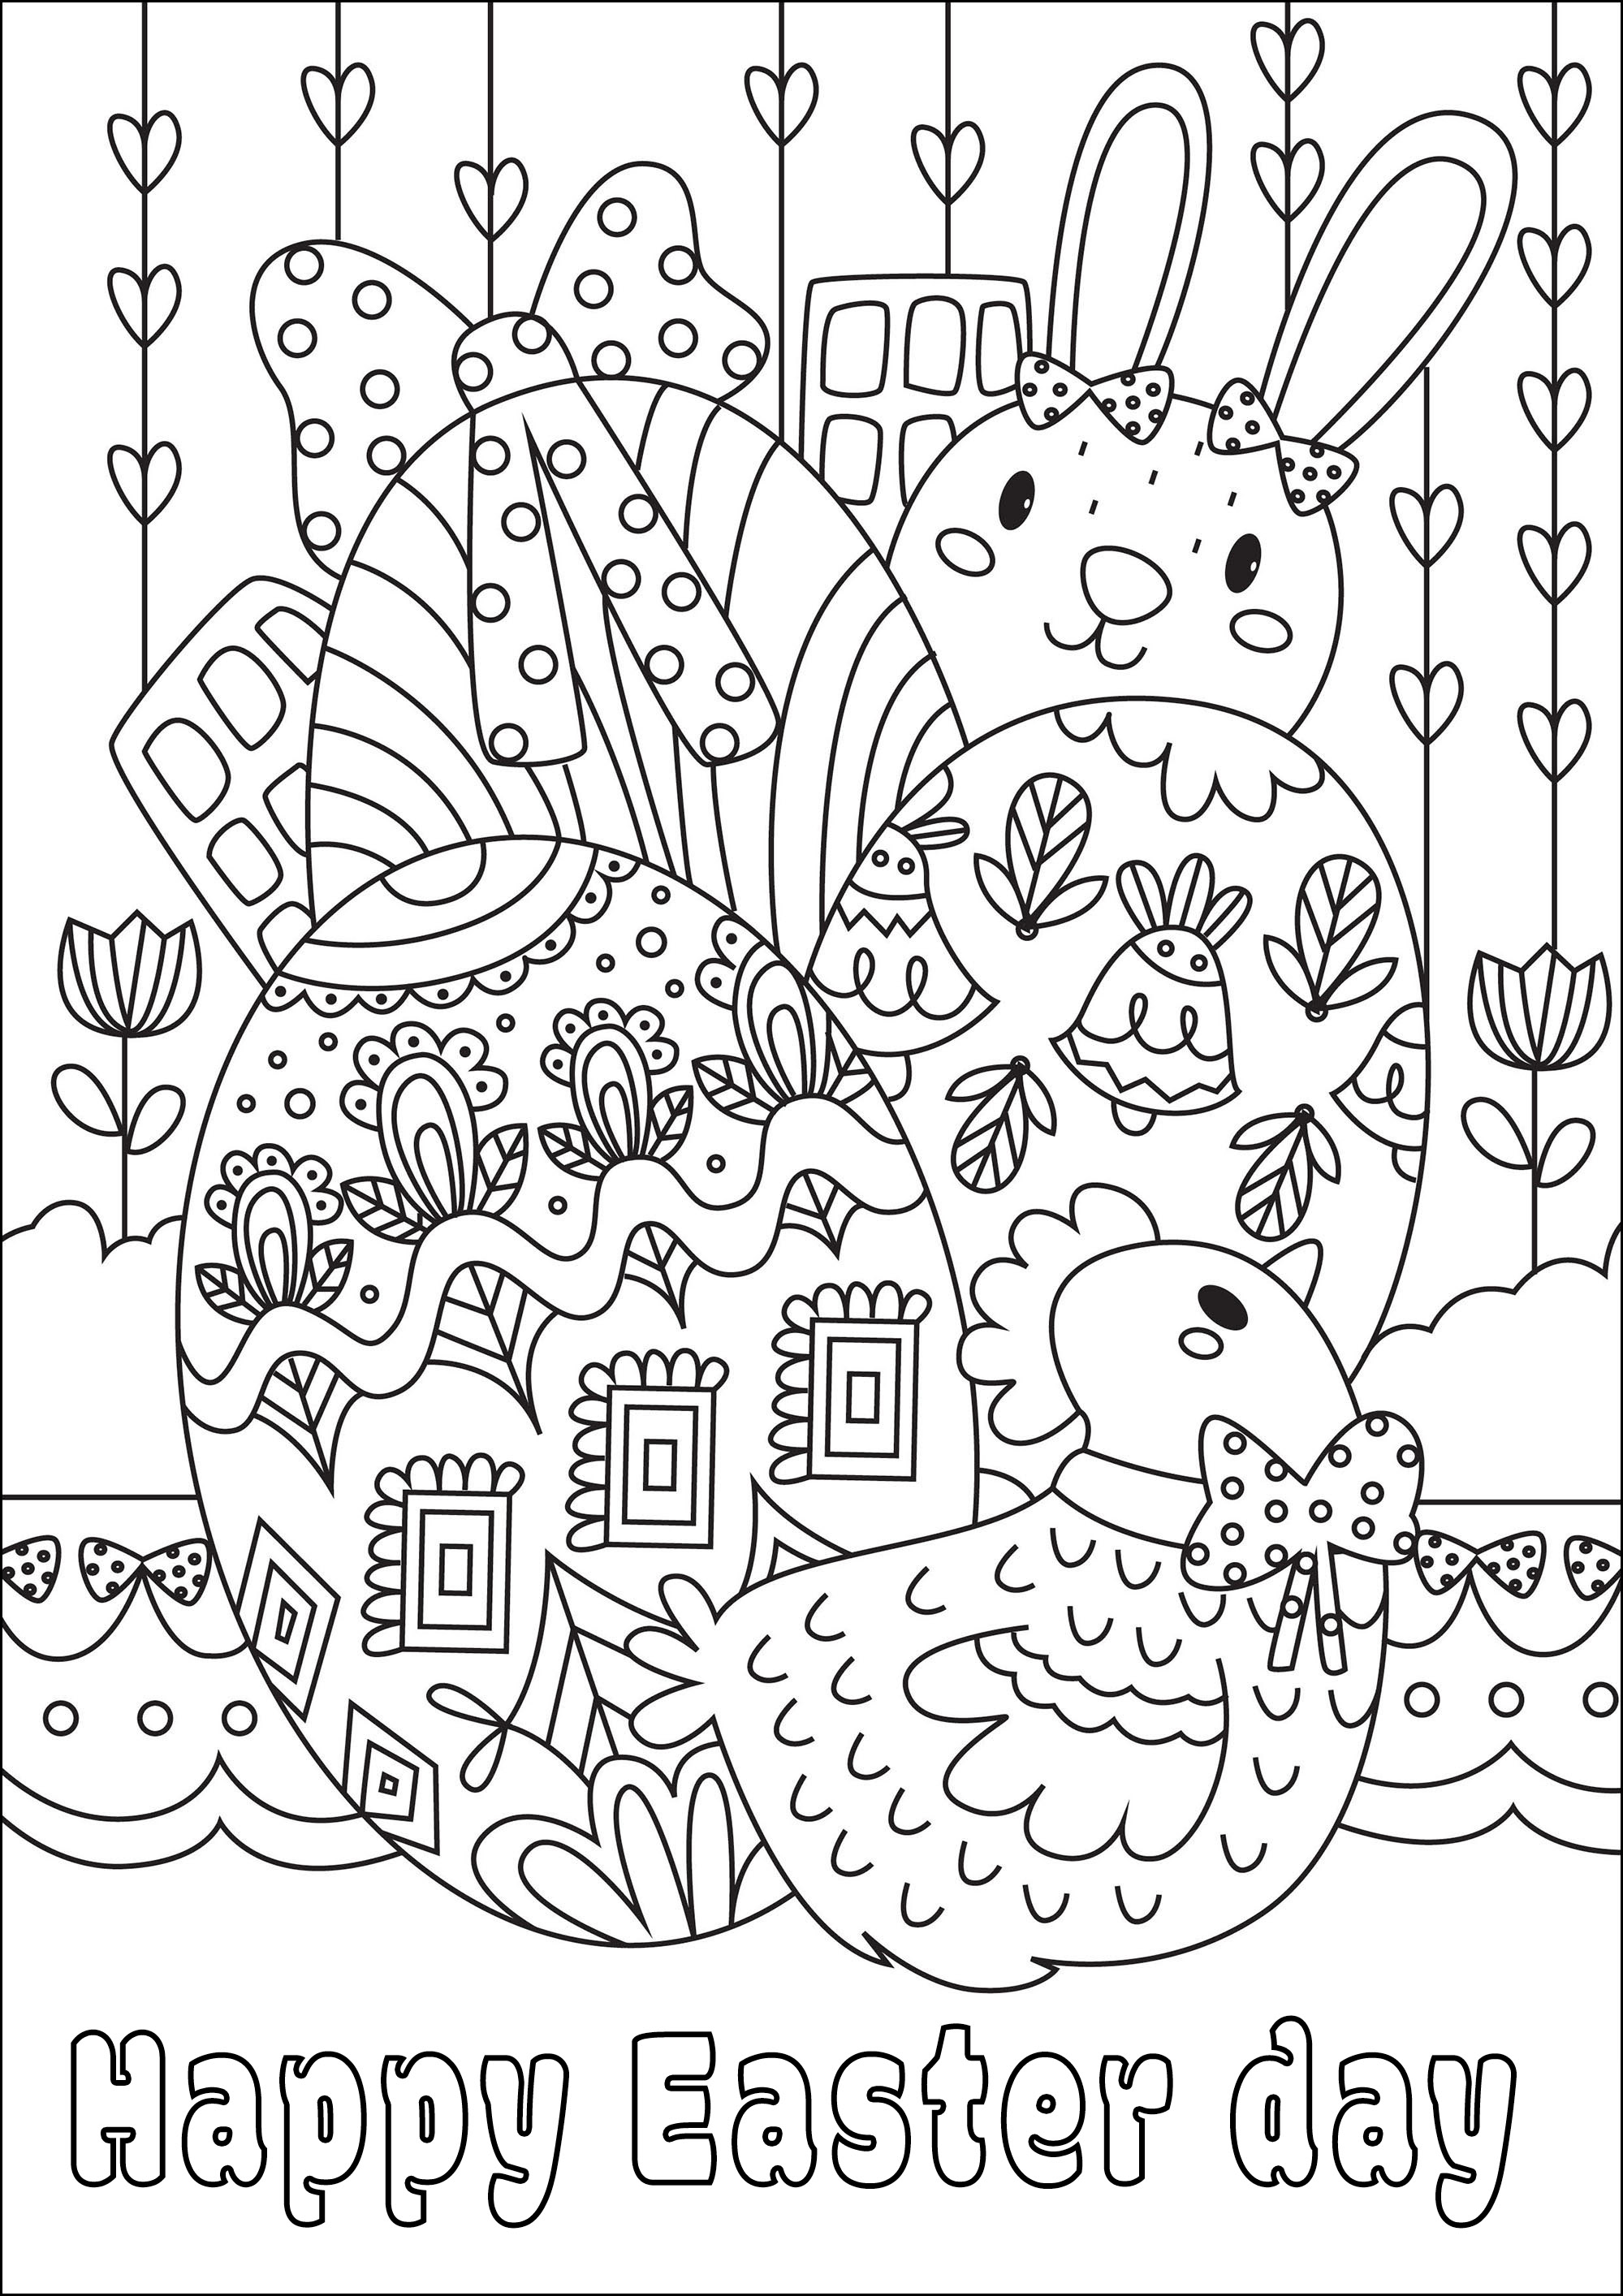 Páscoa para colorir. Uma bonita página para colorir com bonitos ovos, um coelho e uma galinha, Artista : Gaelle Picard